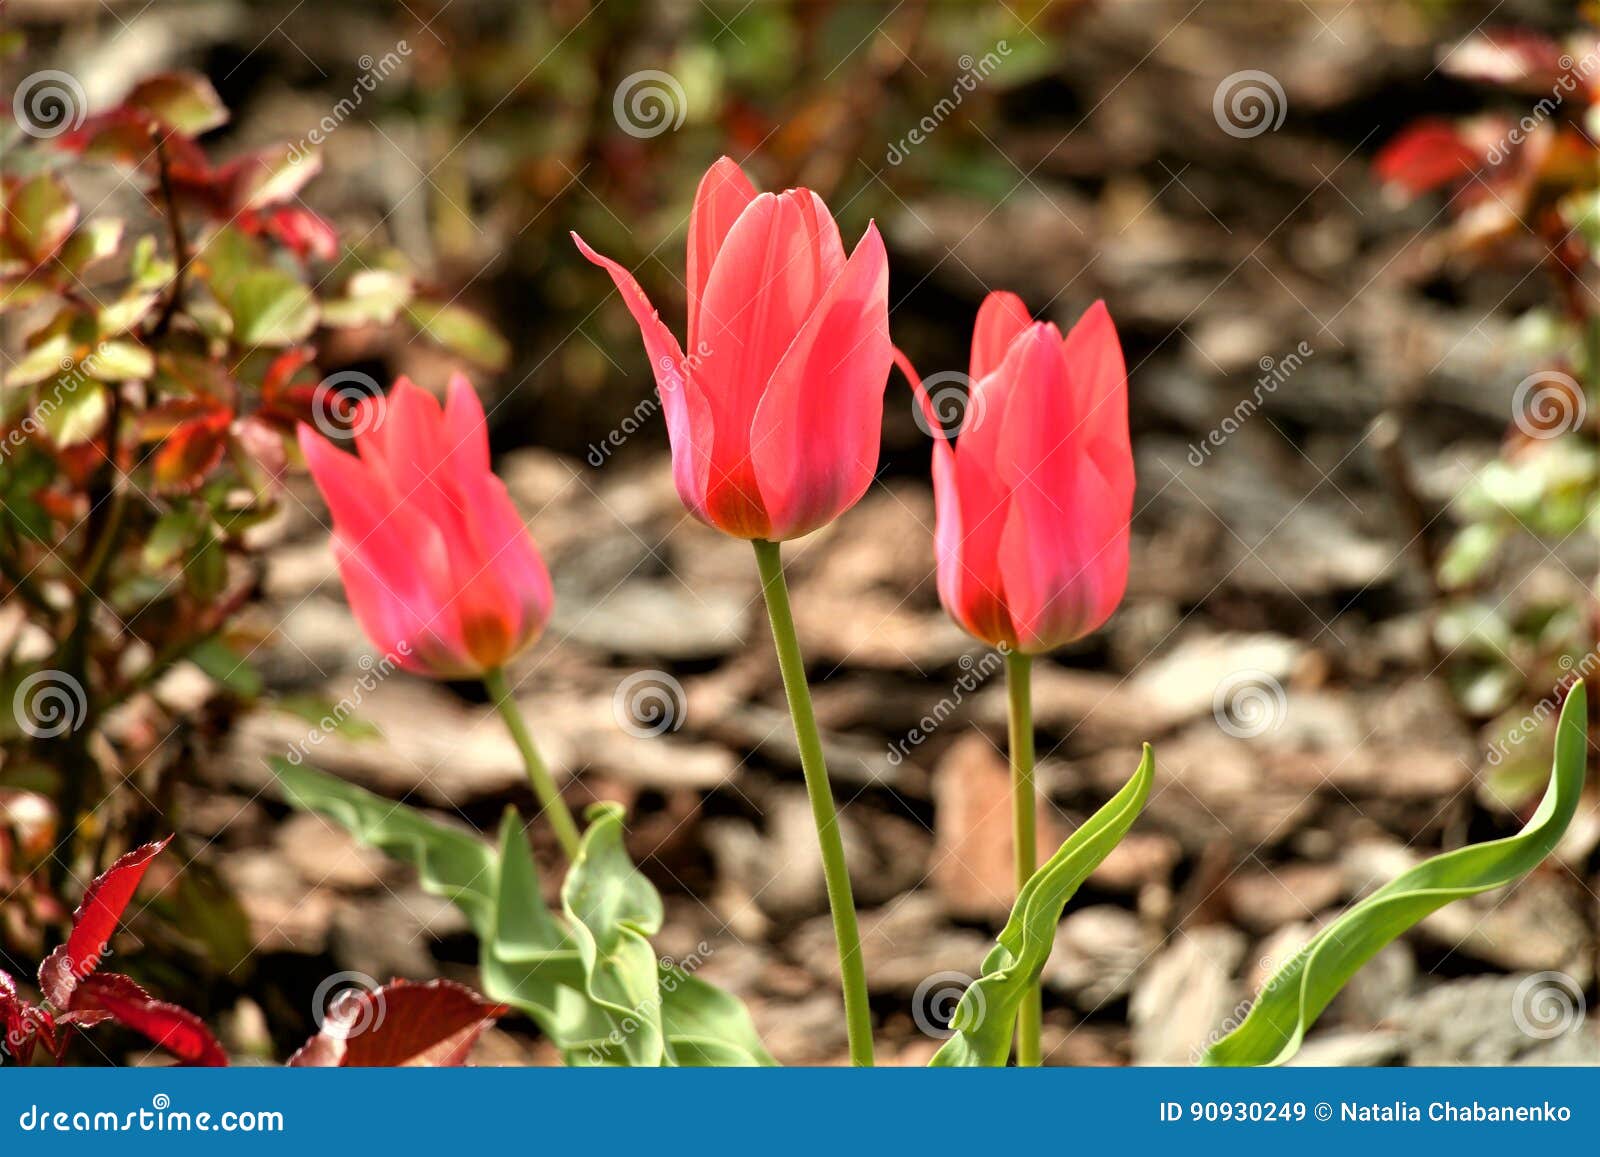 开花郁金香. 这些美丽的花 明亮的猩红色，各种各样的形状，他们使有春天初期的人高兴  郁金香-精采在它的秀丽